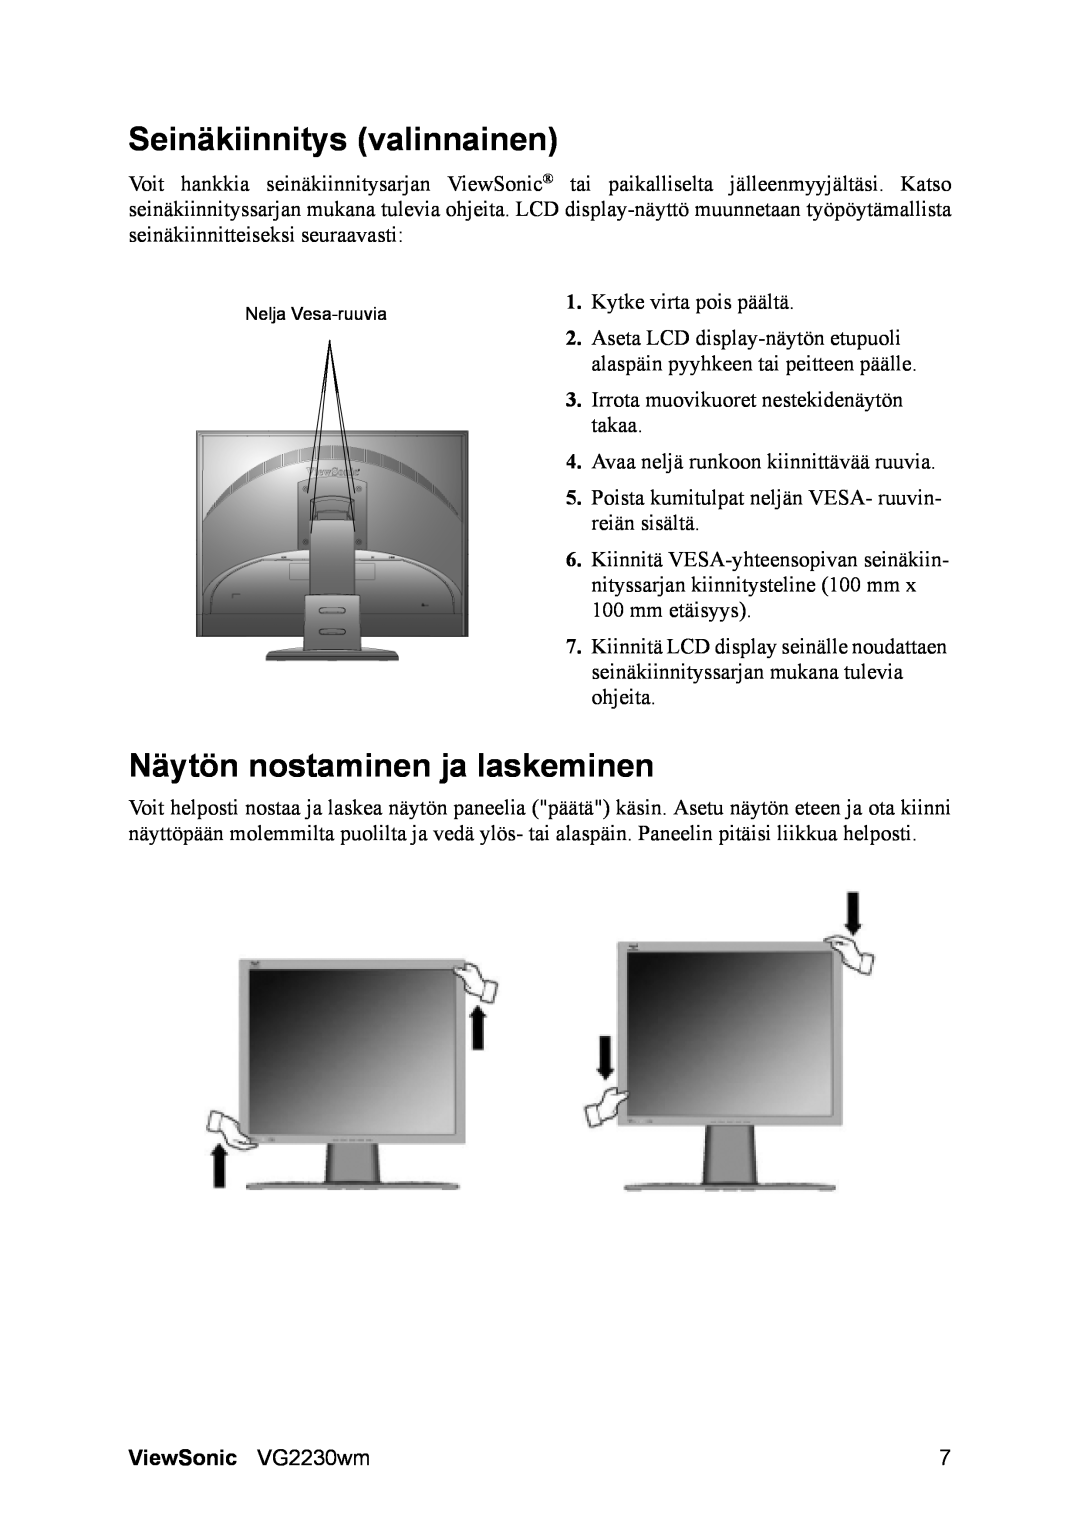 ViewSonic manual Seinäkiinnitys valinnainen, Näytön nostaminen ja laskeminen, ViewSonic VG2230wm 